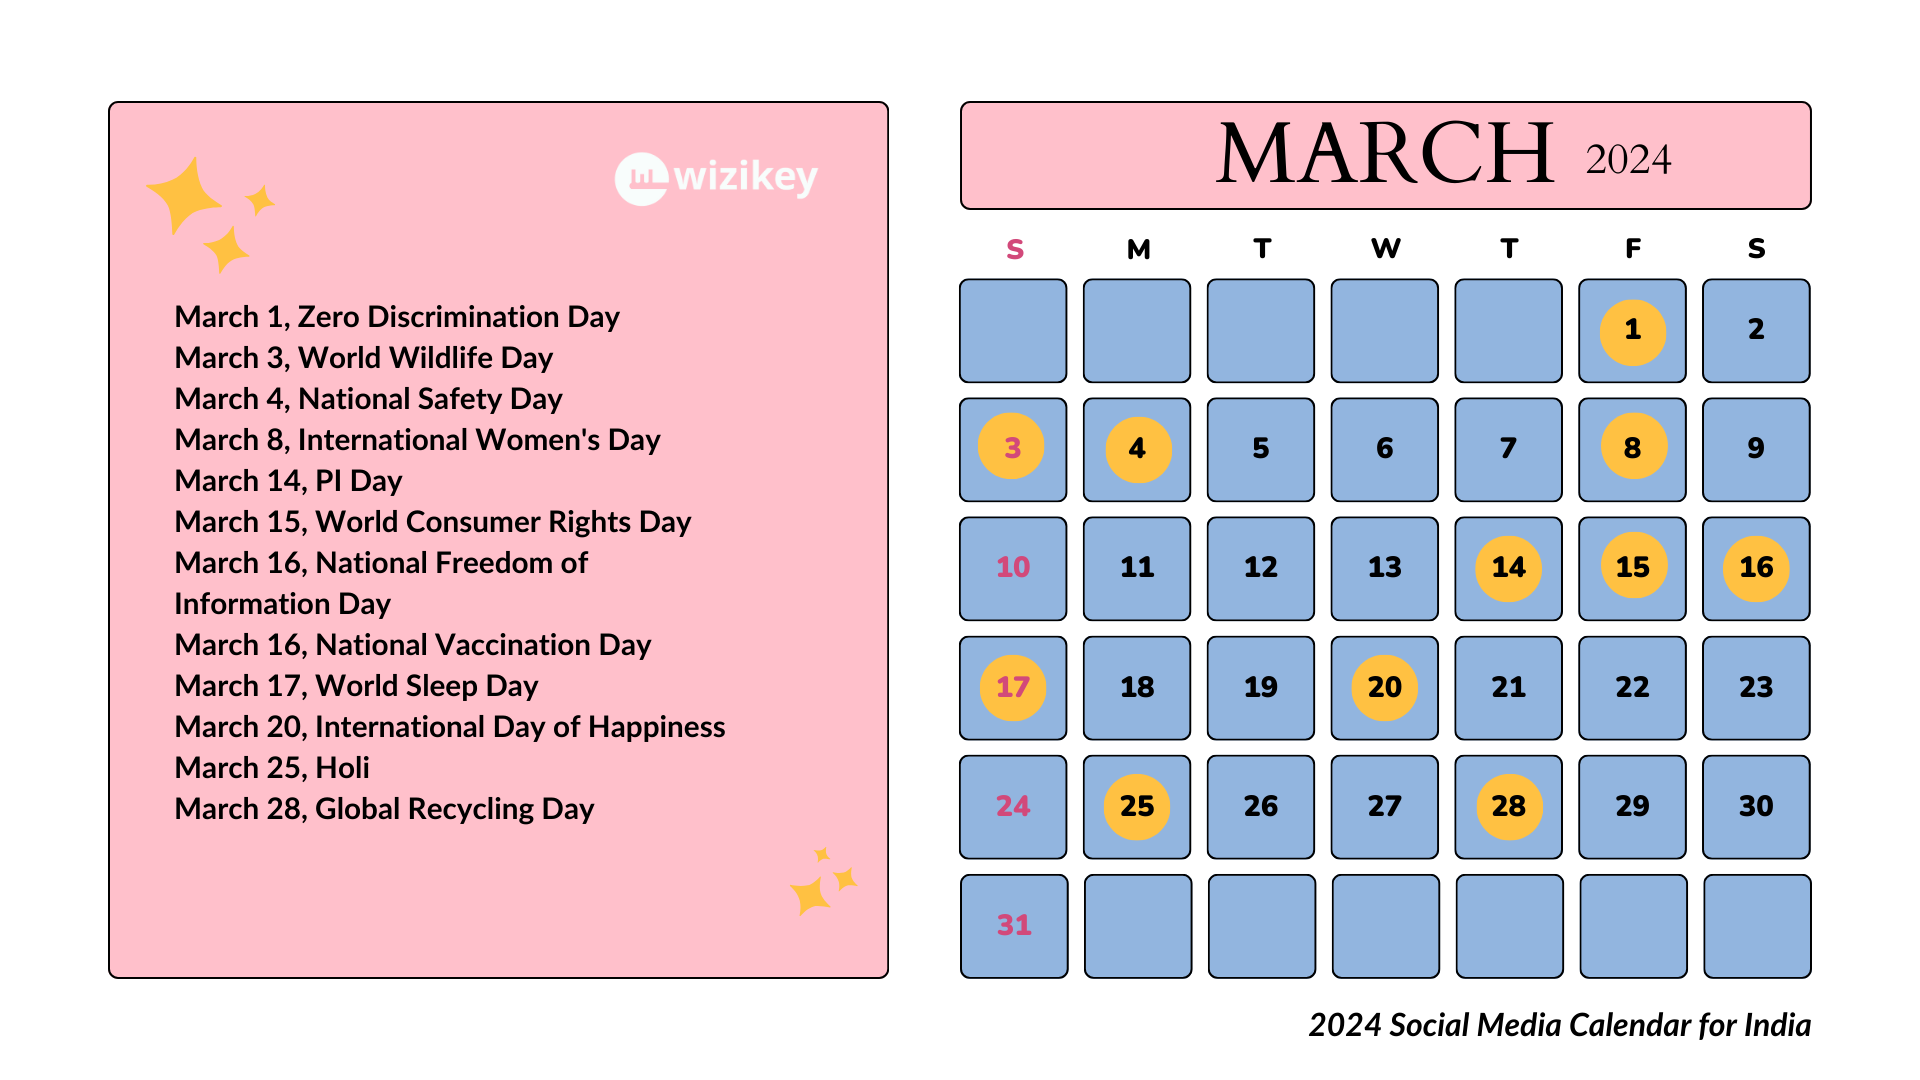 March 2024 Social Media Calendar